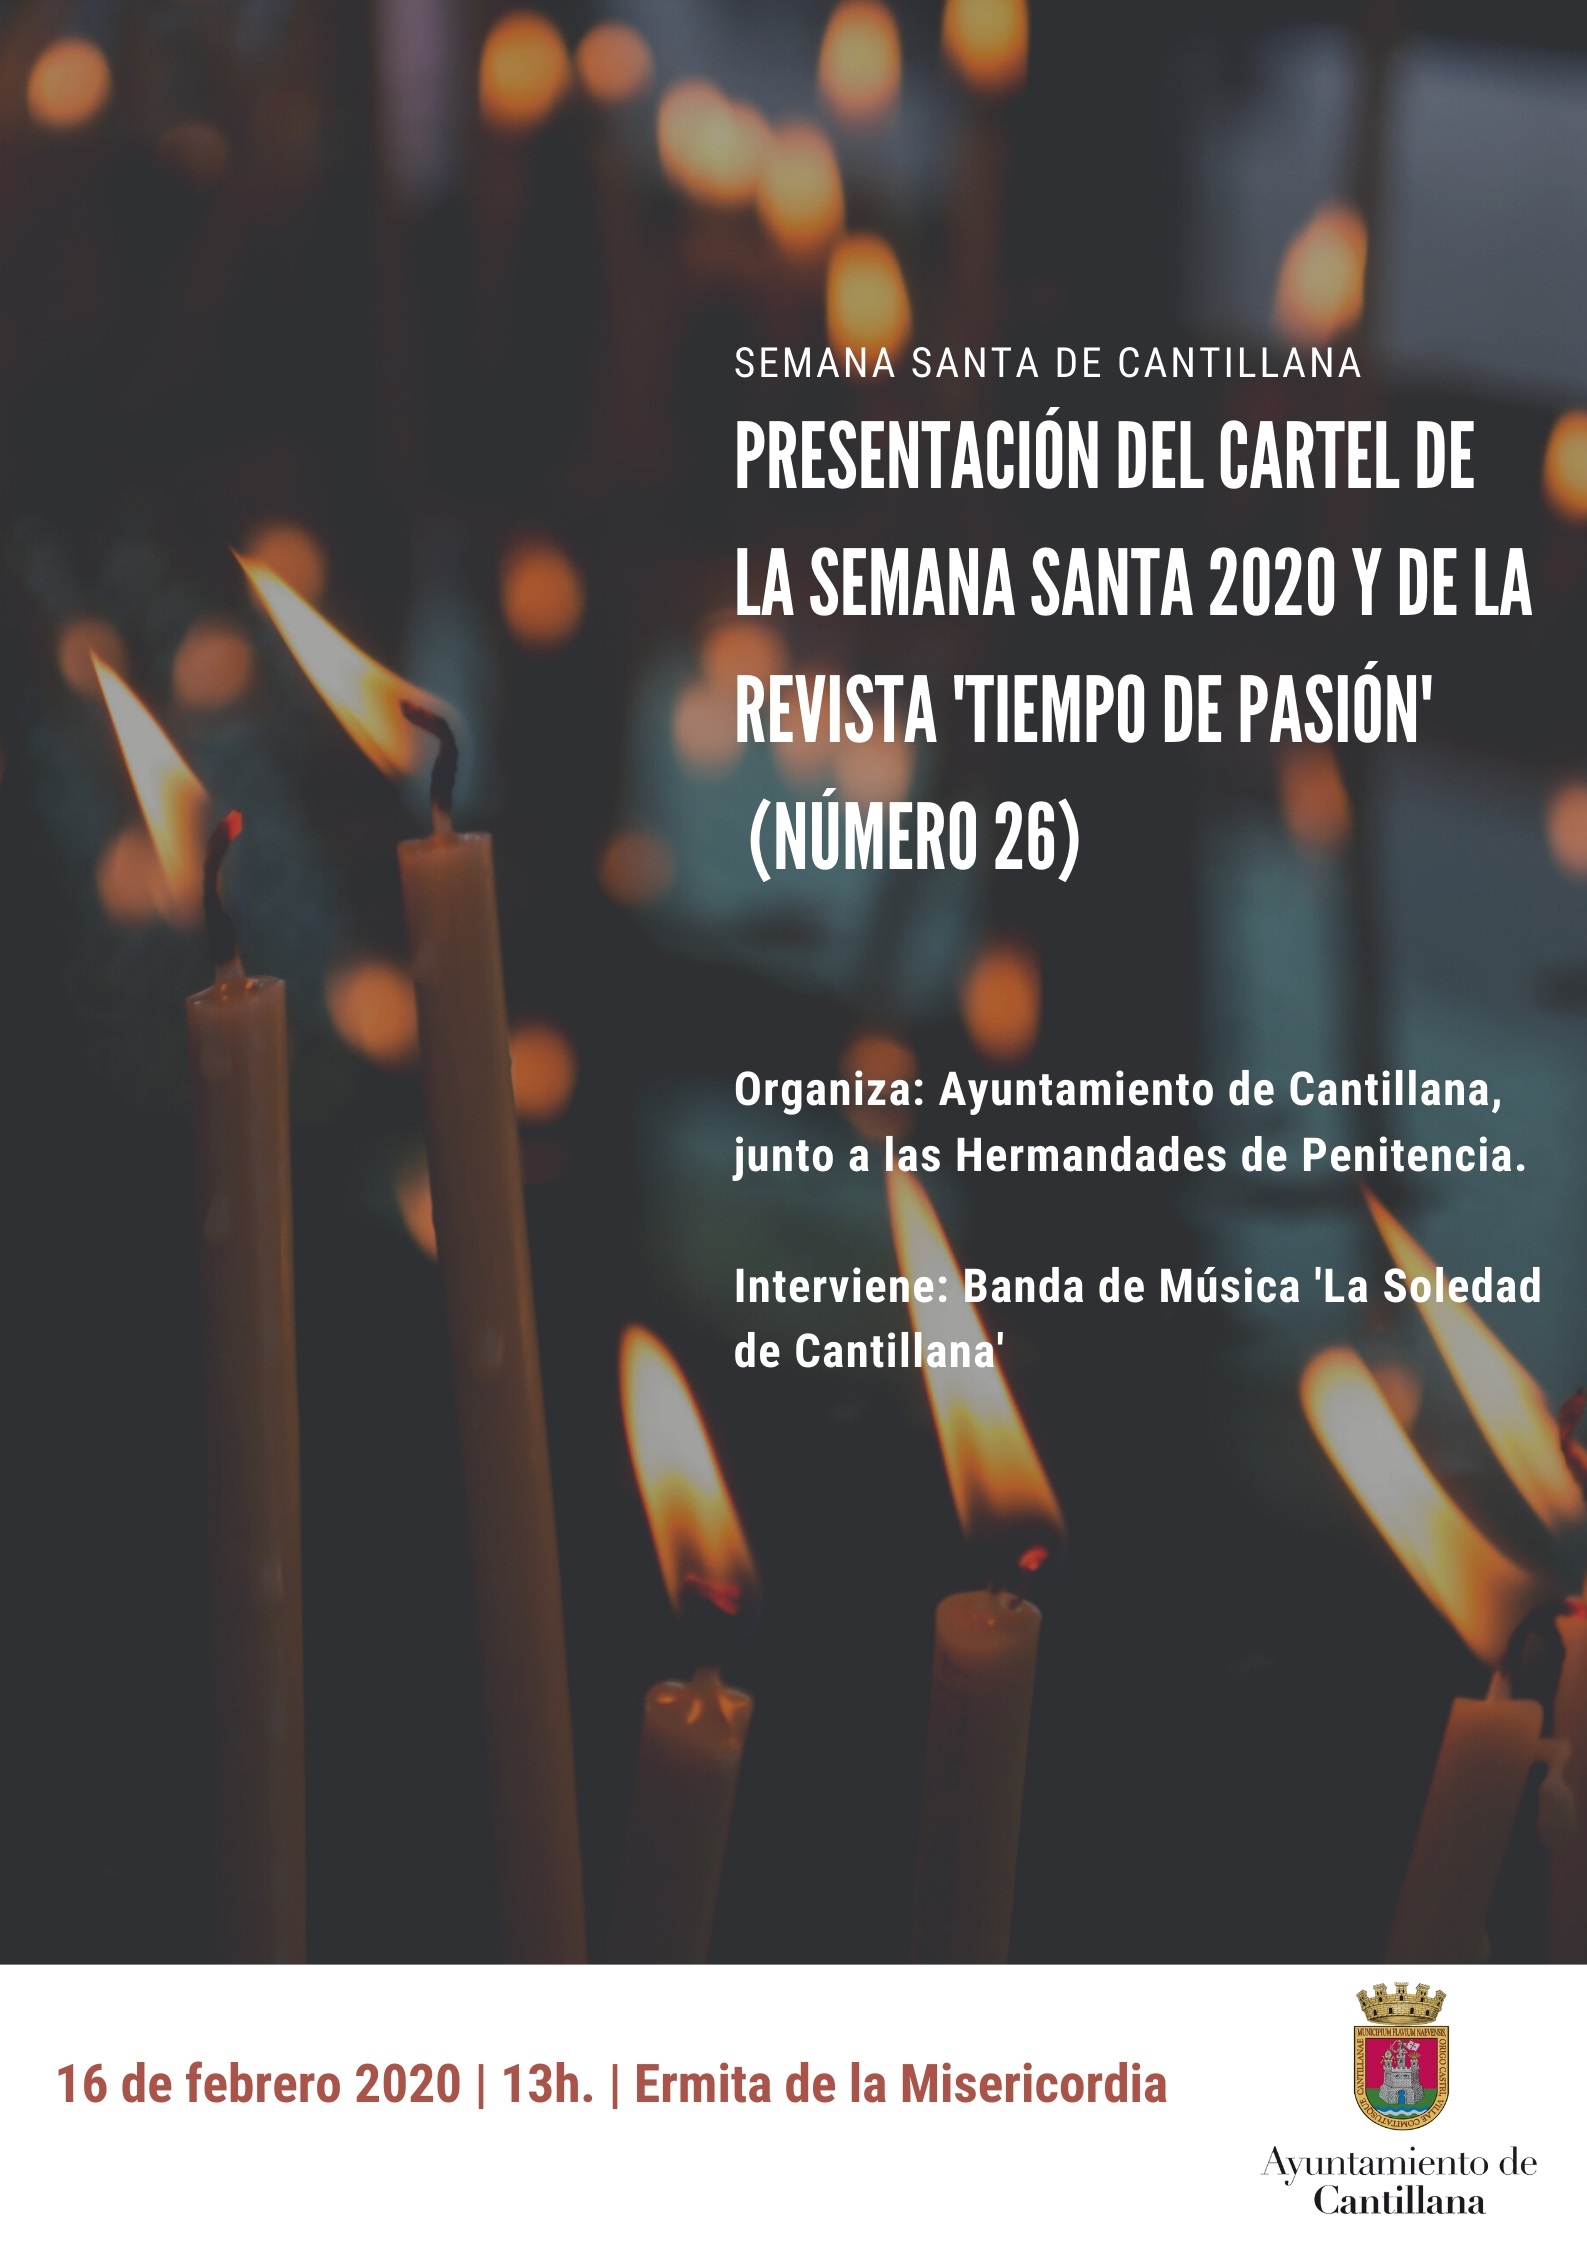 CARTEL_DE_LA_SEMANA_SANTA_2020.jpg